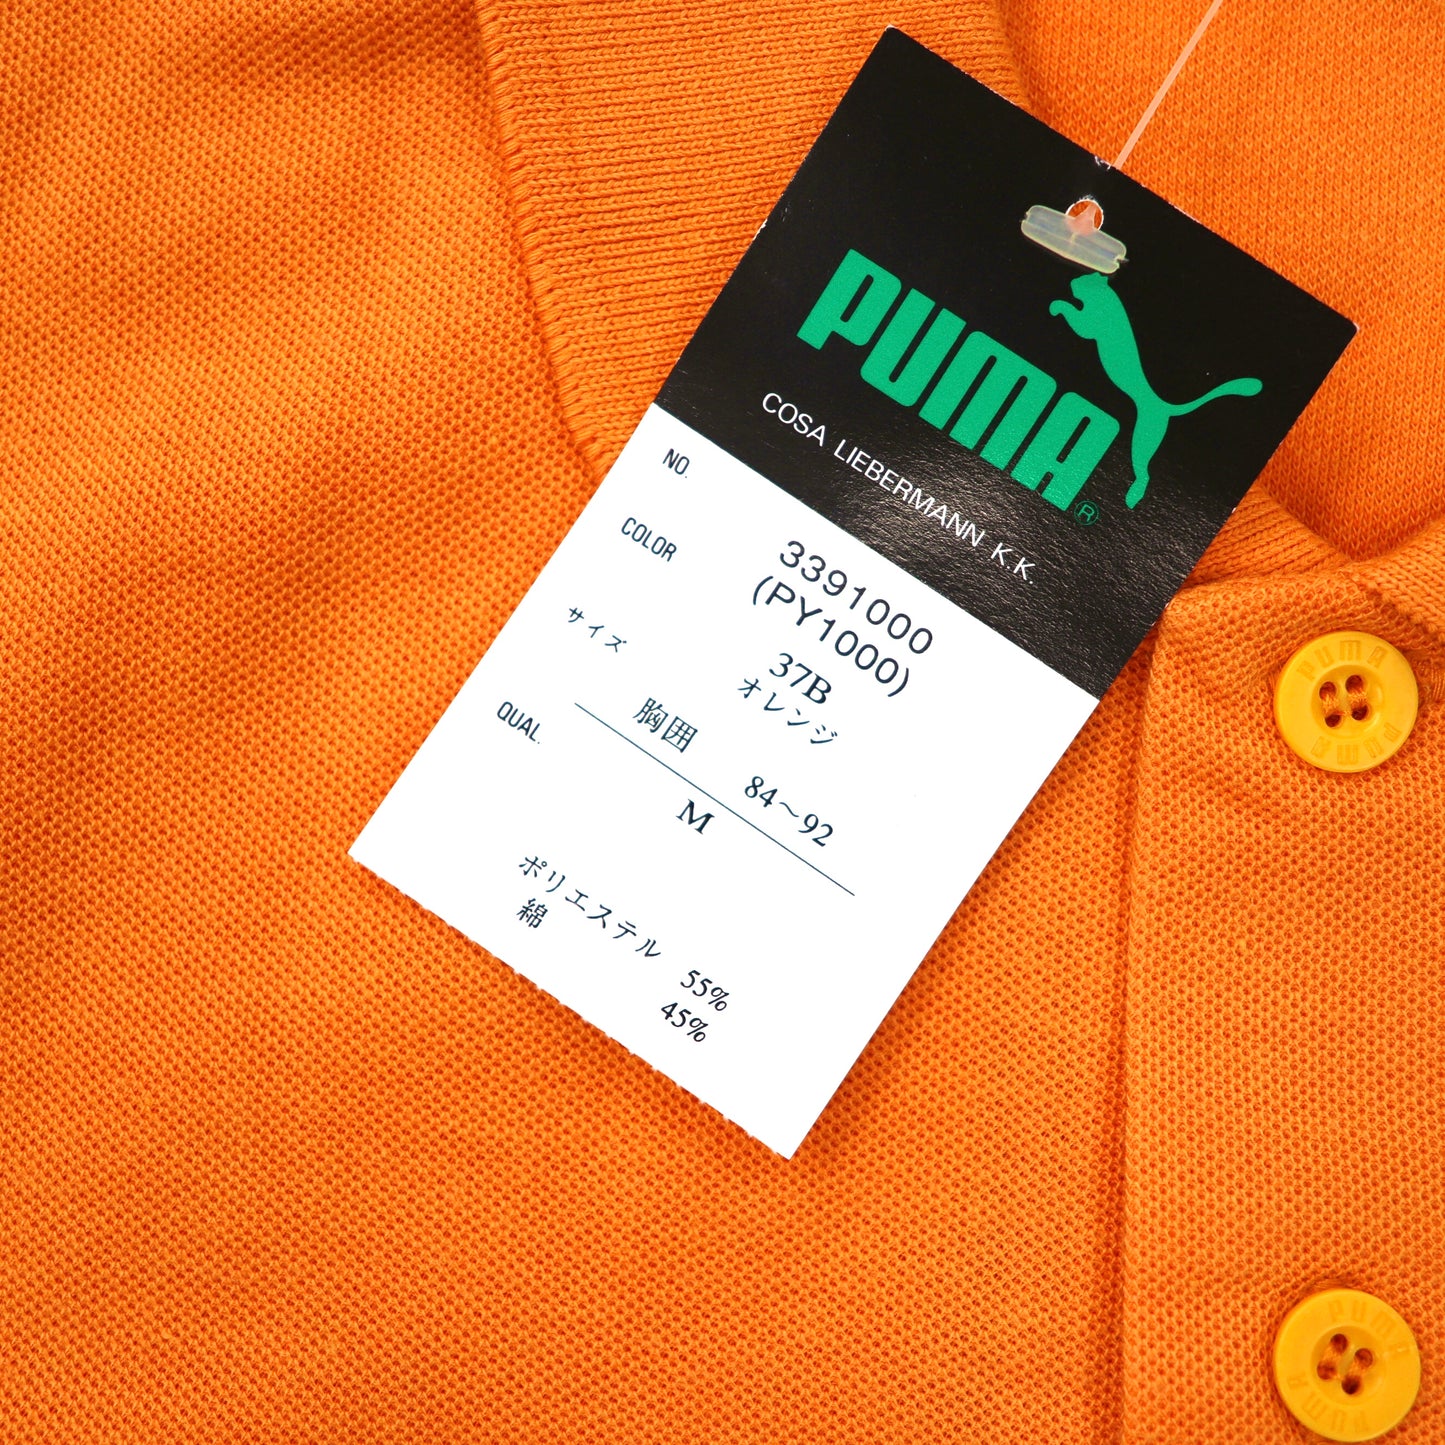 PUMA ポロシャツ M オレンジ コットン ロゴ刺繍 90年代 未使用品